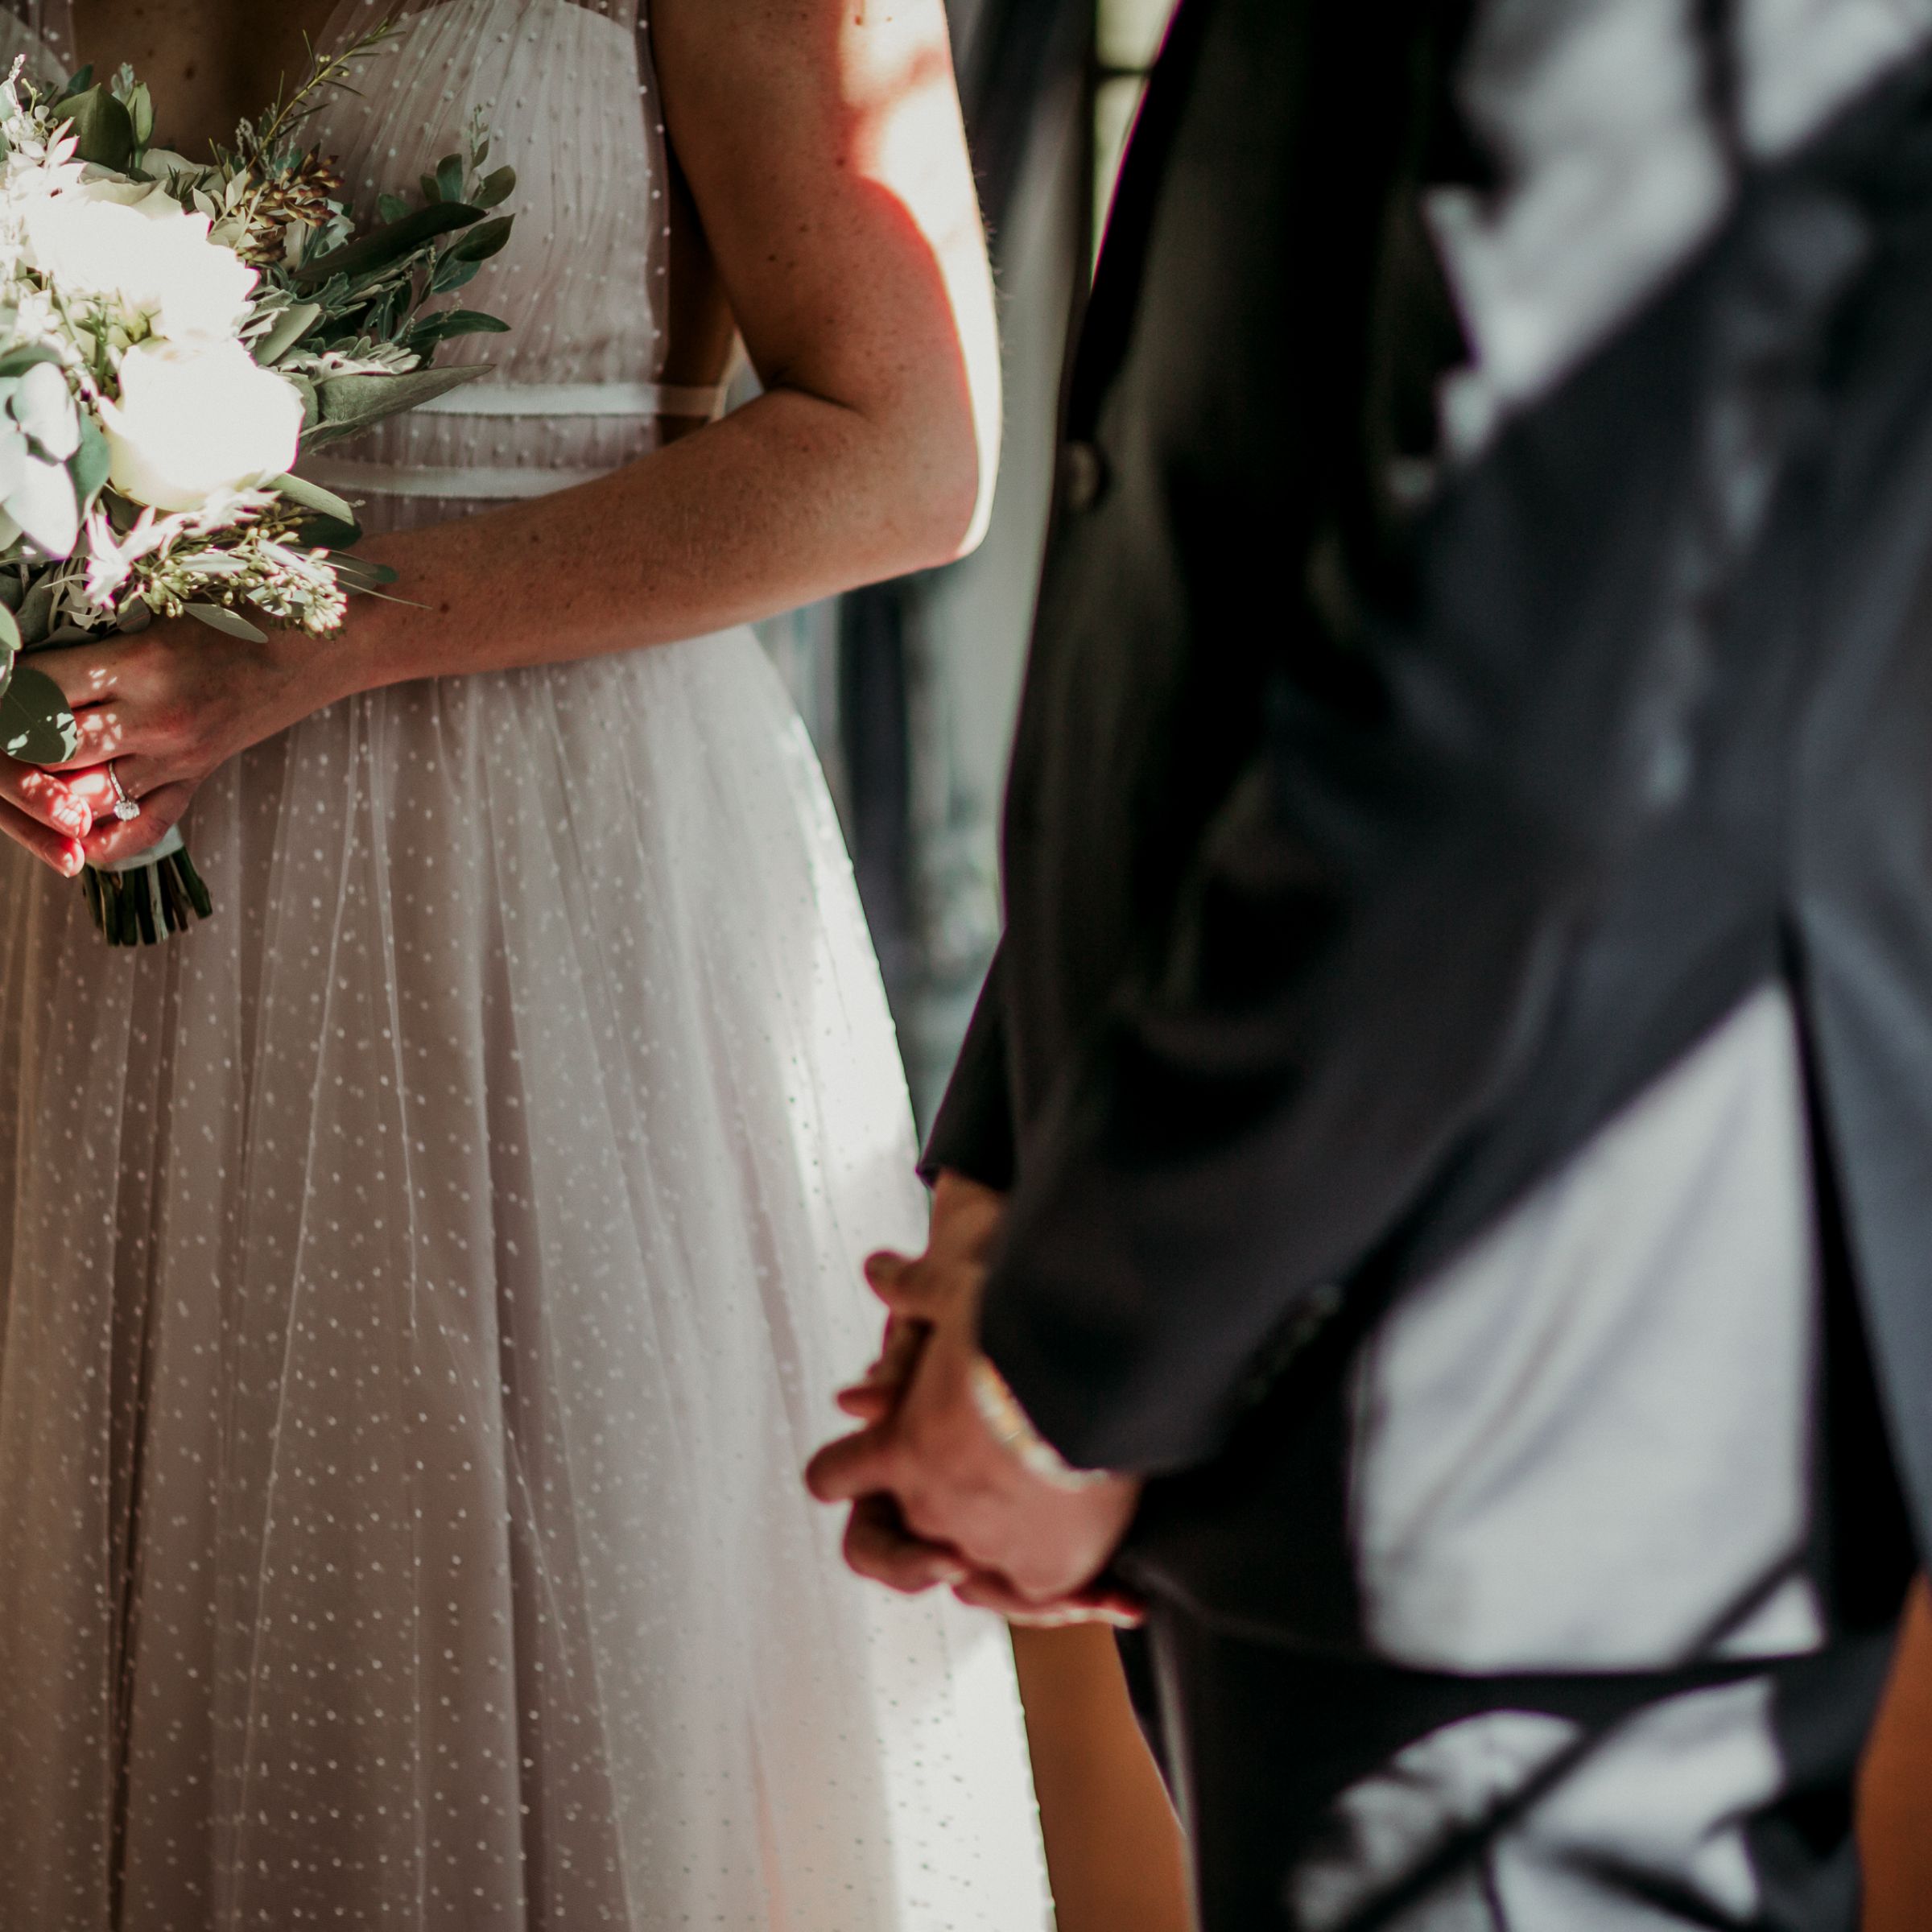 Bodyshots of bride in wedding dress and groom in suit 